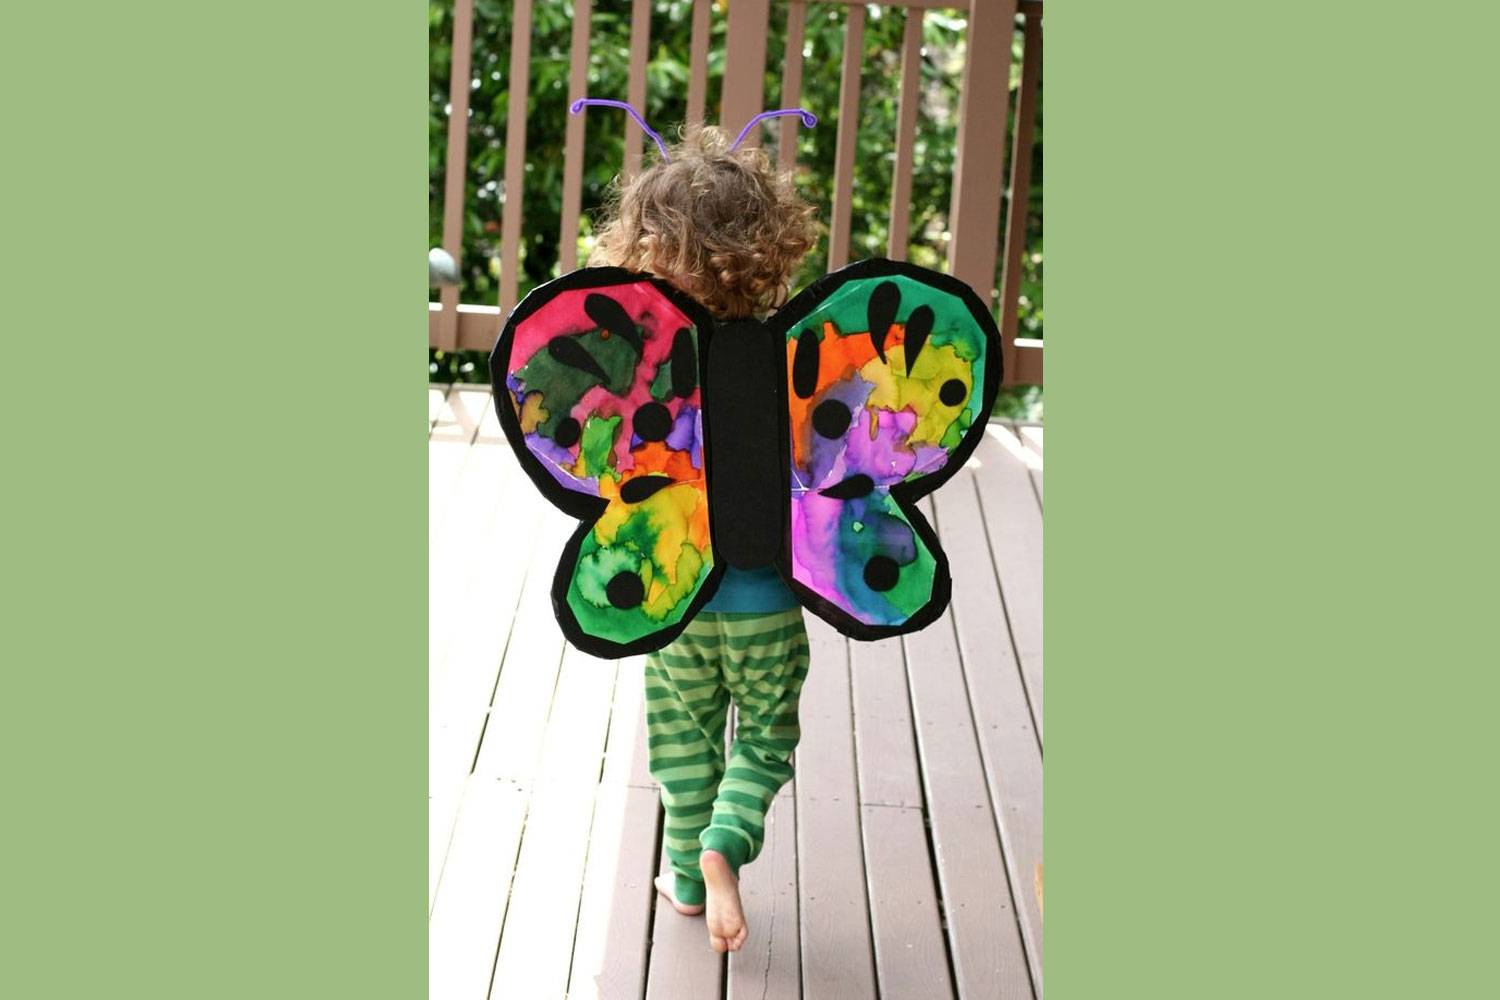 Nagy méretű fekete kartonpapírból vágj ki szárnyakat, eszkábálj rá gumit, amivel rögzítheted a gyerek hátán. A pillangó szárnyainak festését pedig bízd rá a jelmez viselőjére!